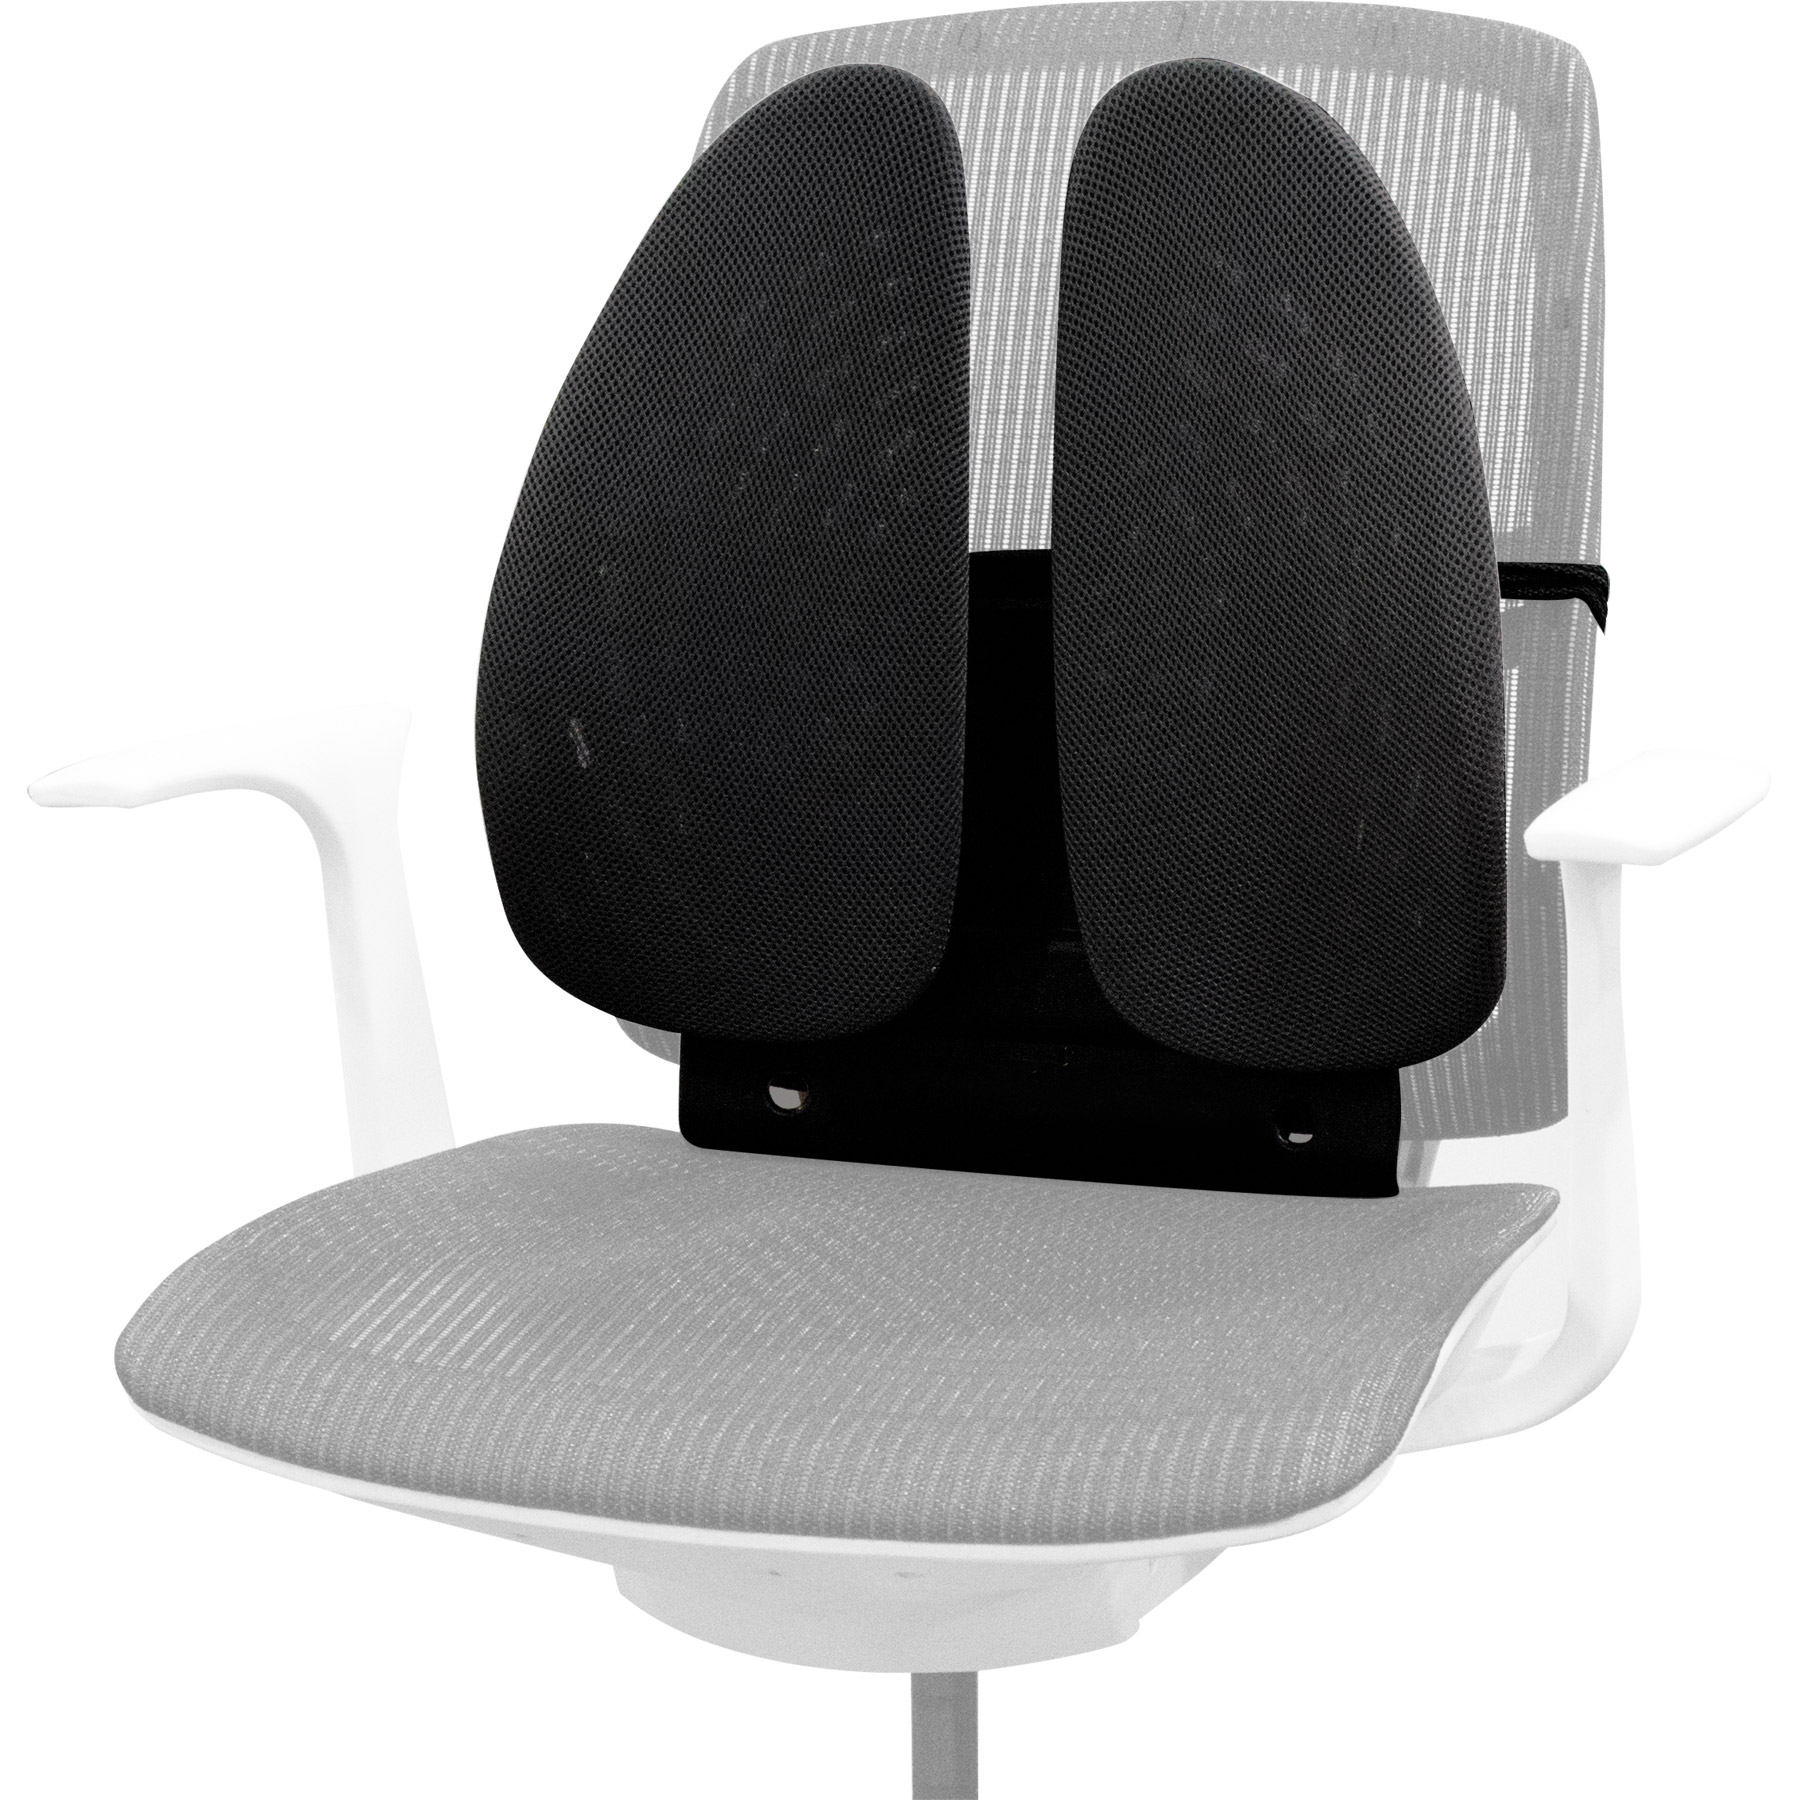 Кресло офисное для поясницы. Подушка для кресла Fellowes FS-80264. Fellowes FS-80265. Подставка для ног 3m fr330. Ортопедическая накладка на кресло.